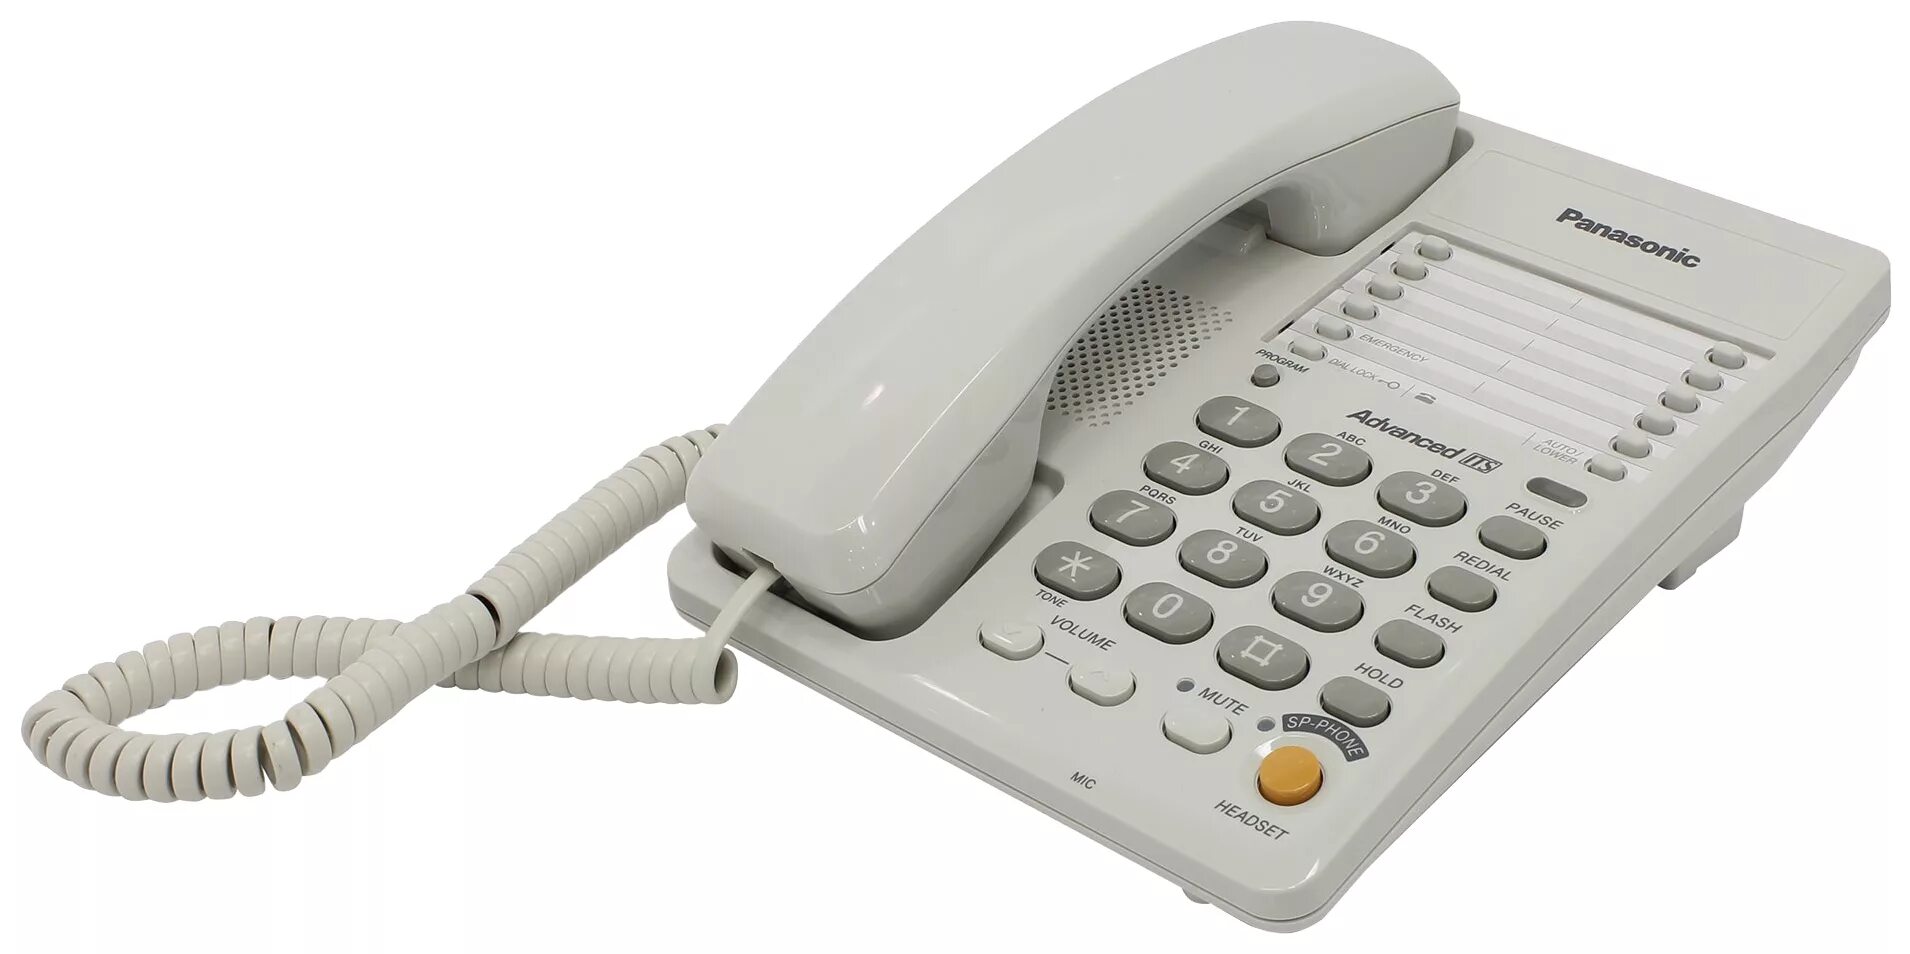 Саратов стационарные телефоны. Panasonic KX-ts2363. Panasonic KX-ts2365ruw (белый). Телефонный аппарат Panasonic KX-ts2365. Проводной телефон Panasonic KX-ts2363ruw, белый.